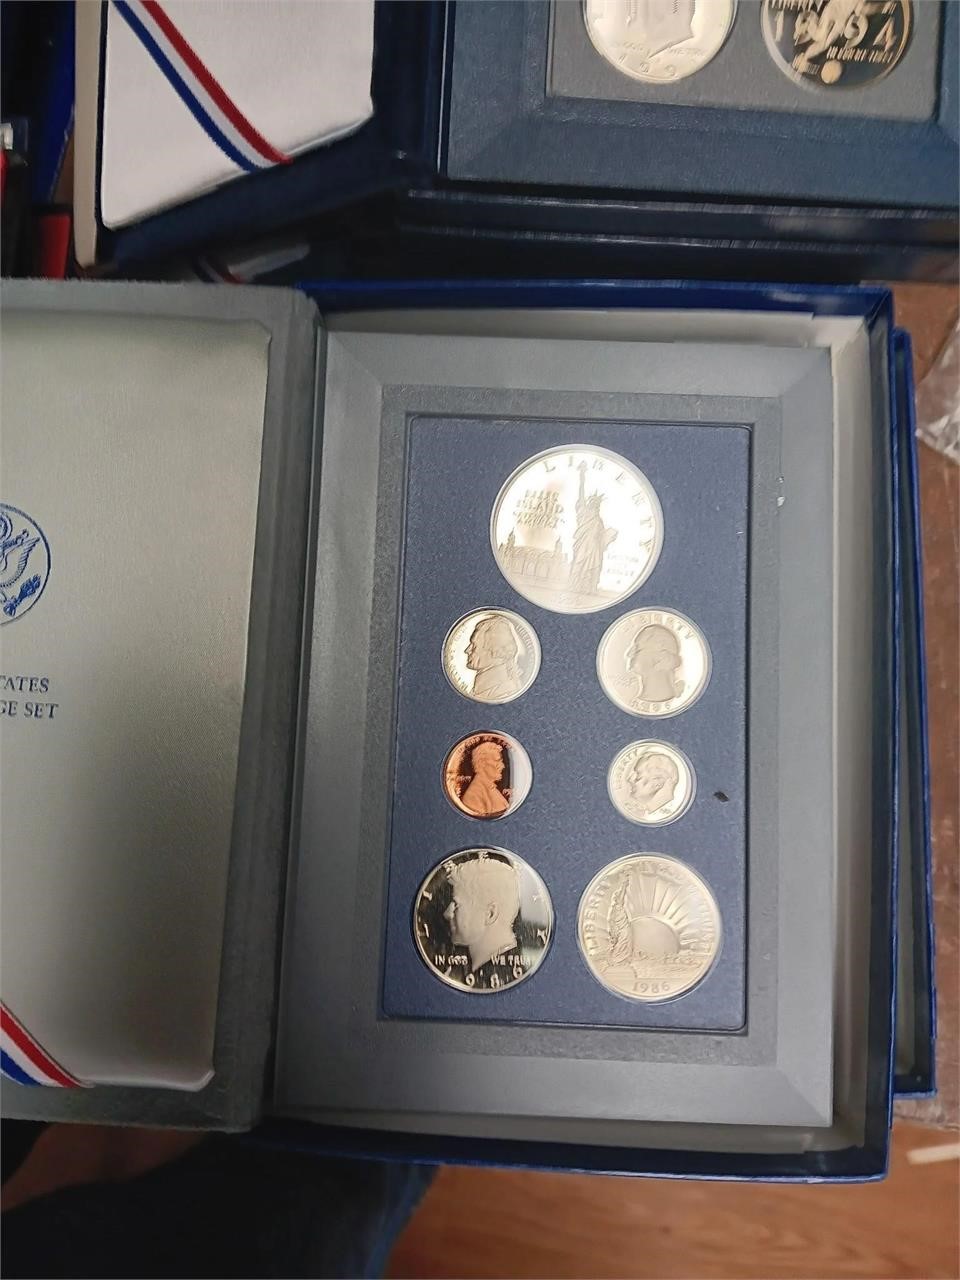 1986 US Mint Prestige Coin Set